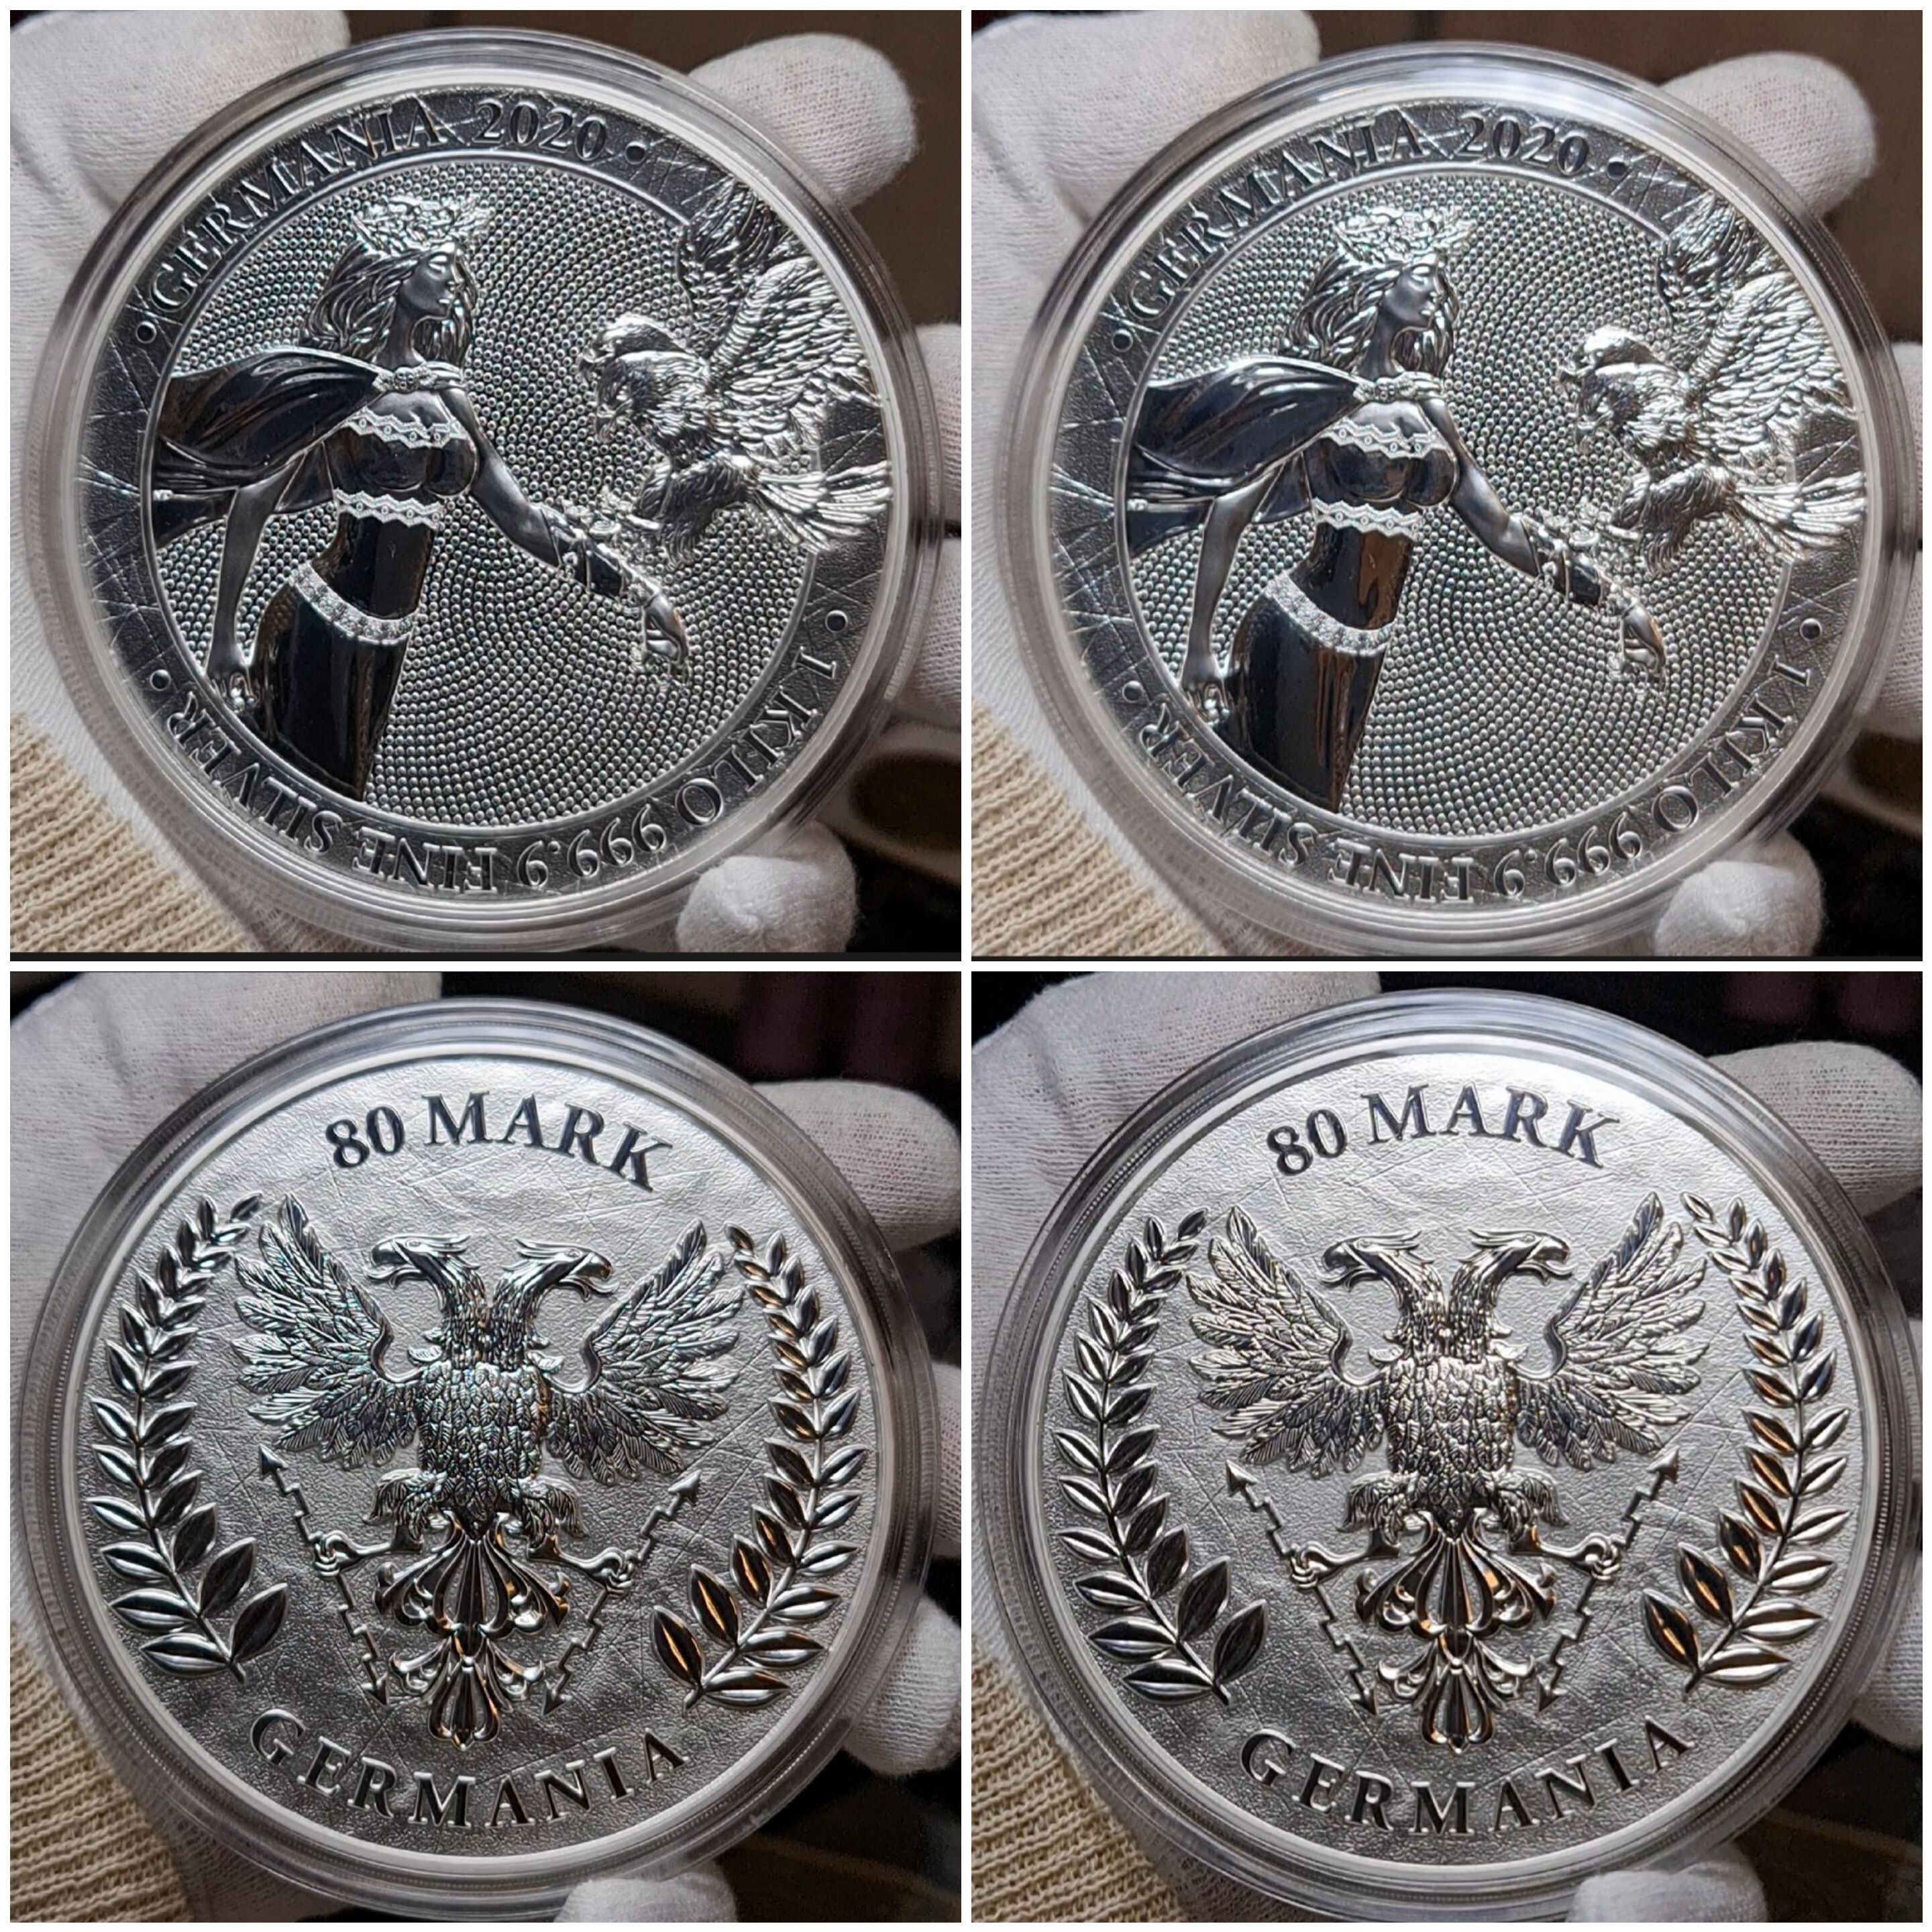 Germania Mint 80 Mark Medaille 2019 Germania 2020 1 Kilo ...